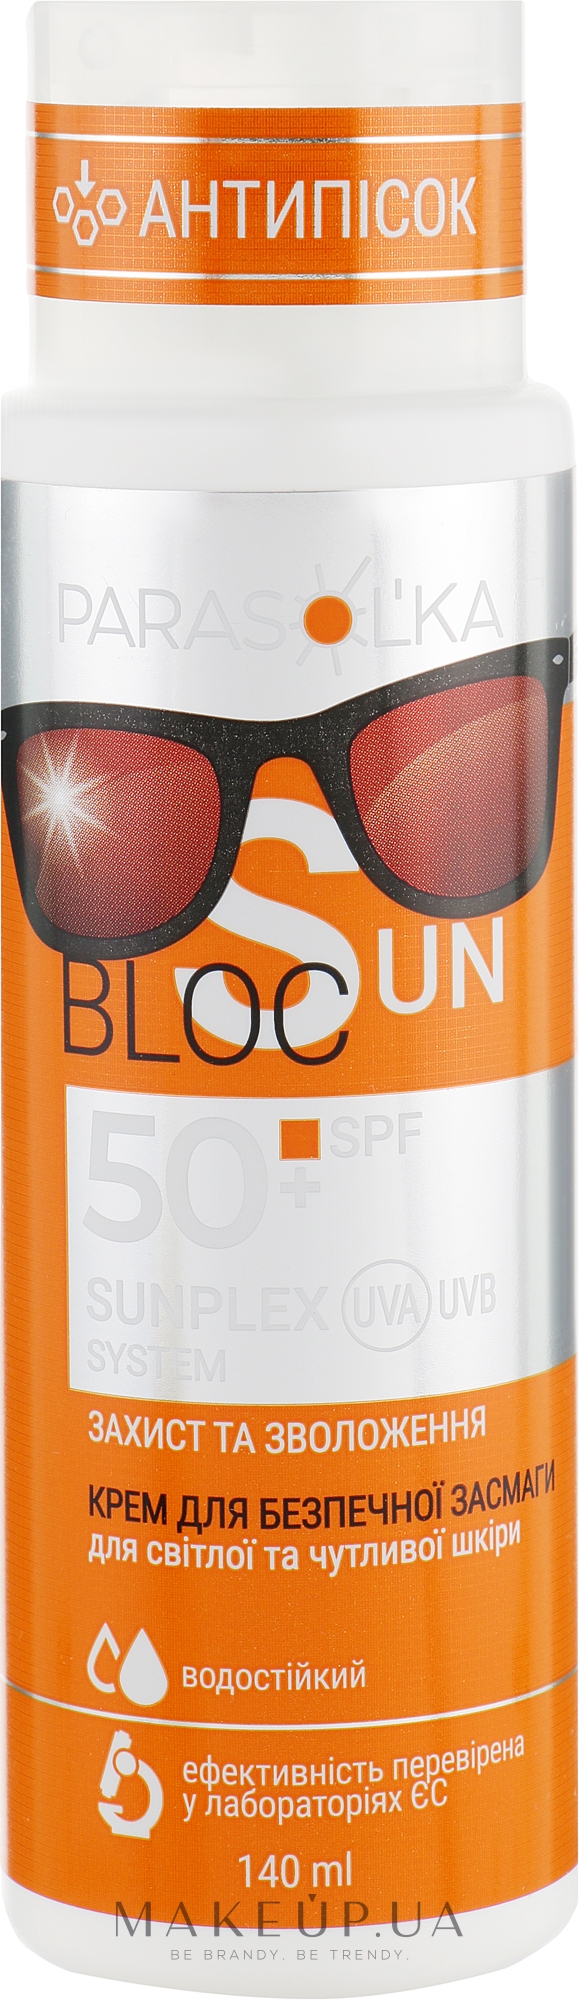 Крем для безпечної засмаги для світлої та чутливої шкіри SPF50 - Velta Cosmetic Parasol'ka Sun Cream — фото 140ml